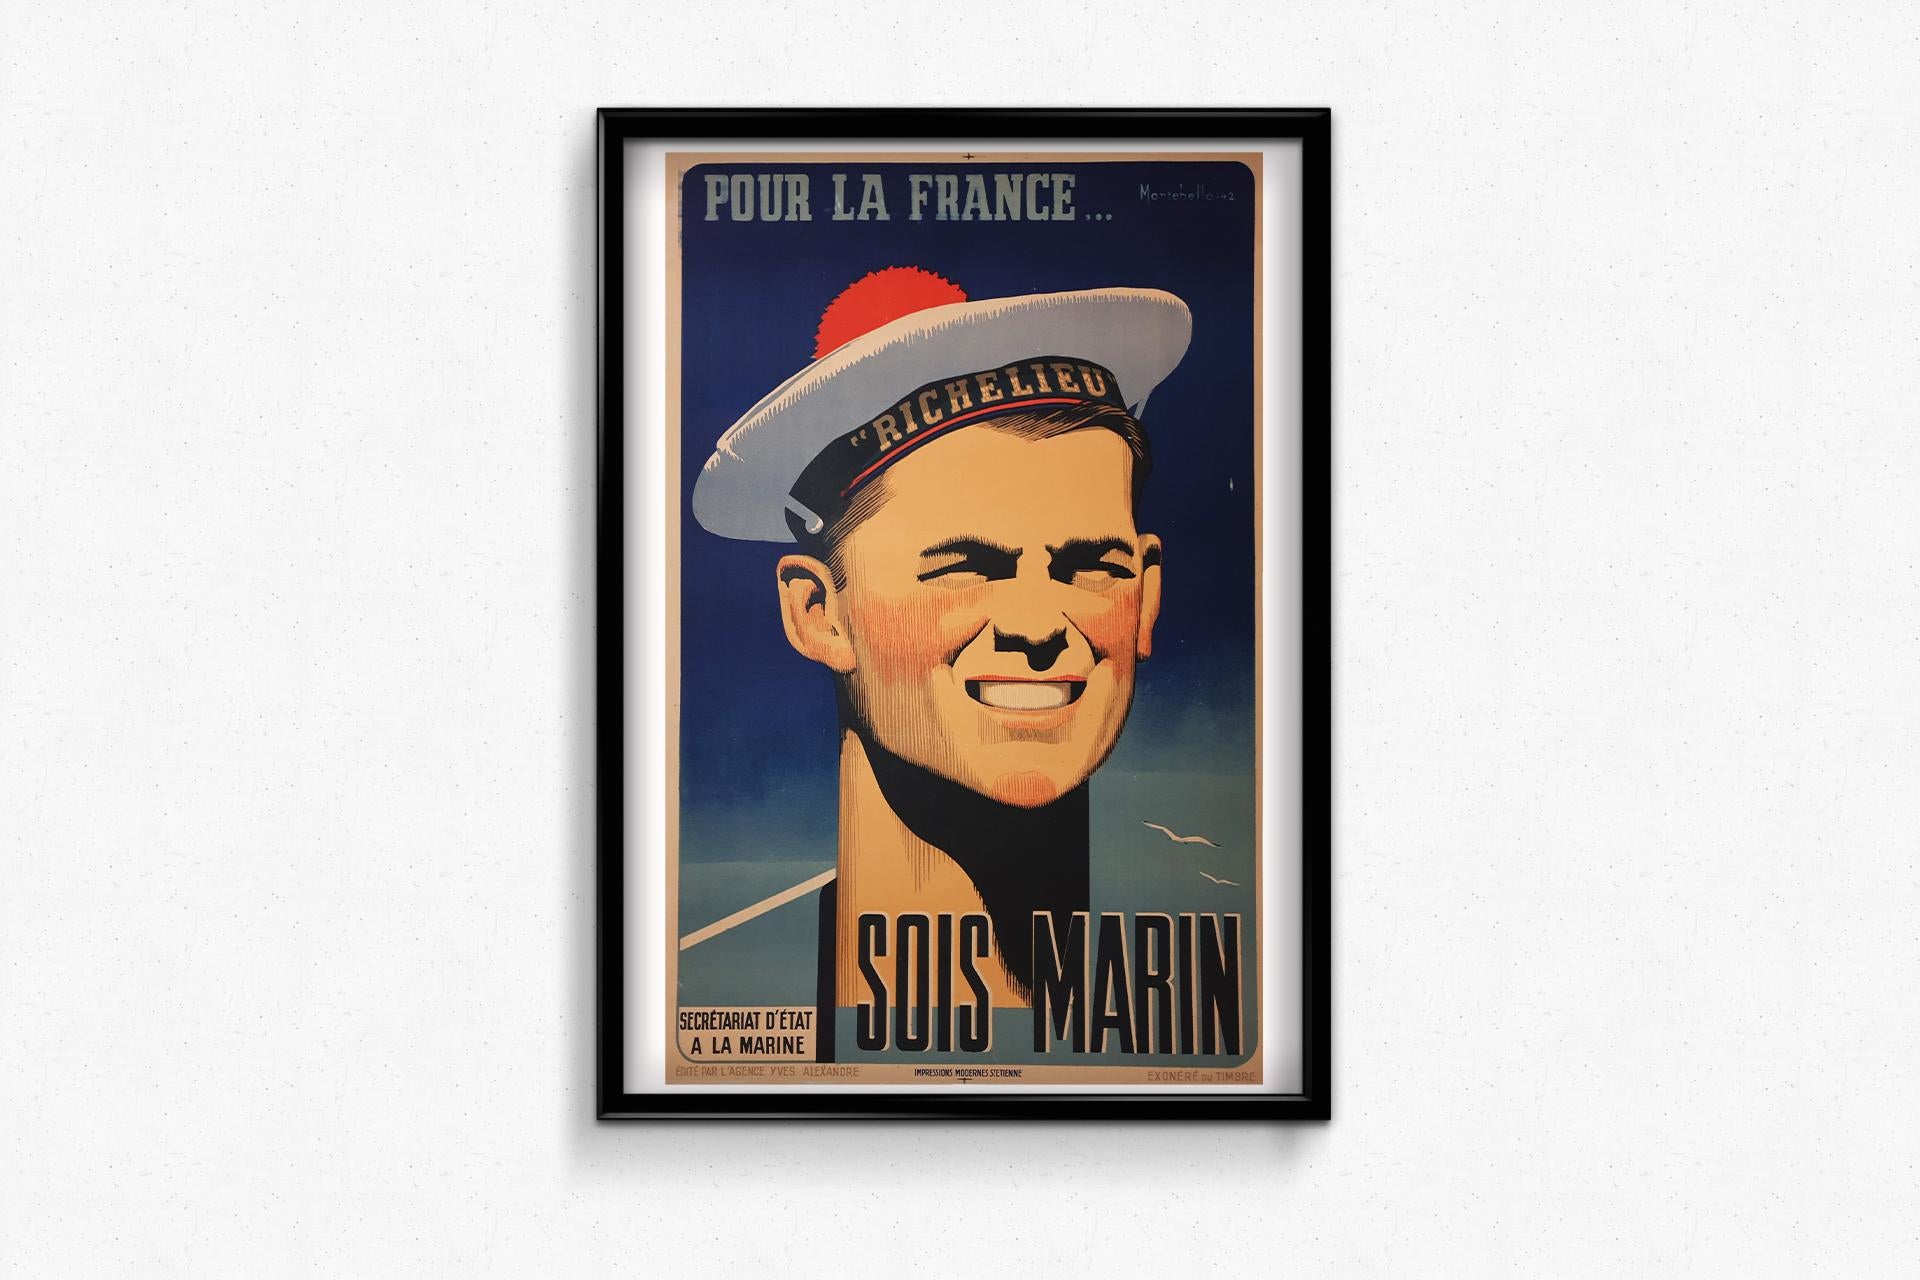 Ein Originalplakat aus dem Jahr 1942, mitten im Weltkrieg, als Frankreich teilweise besetzt war. Die Kriegsanstrengungen mussten unterstützt werden, und es wurden alle Kommunikationshebel in Bewegung gesetzt.

Auf diesem erhabenen Plakat, das die